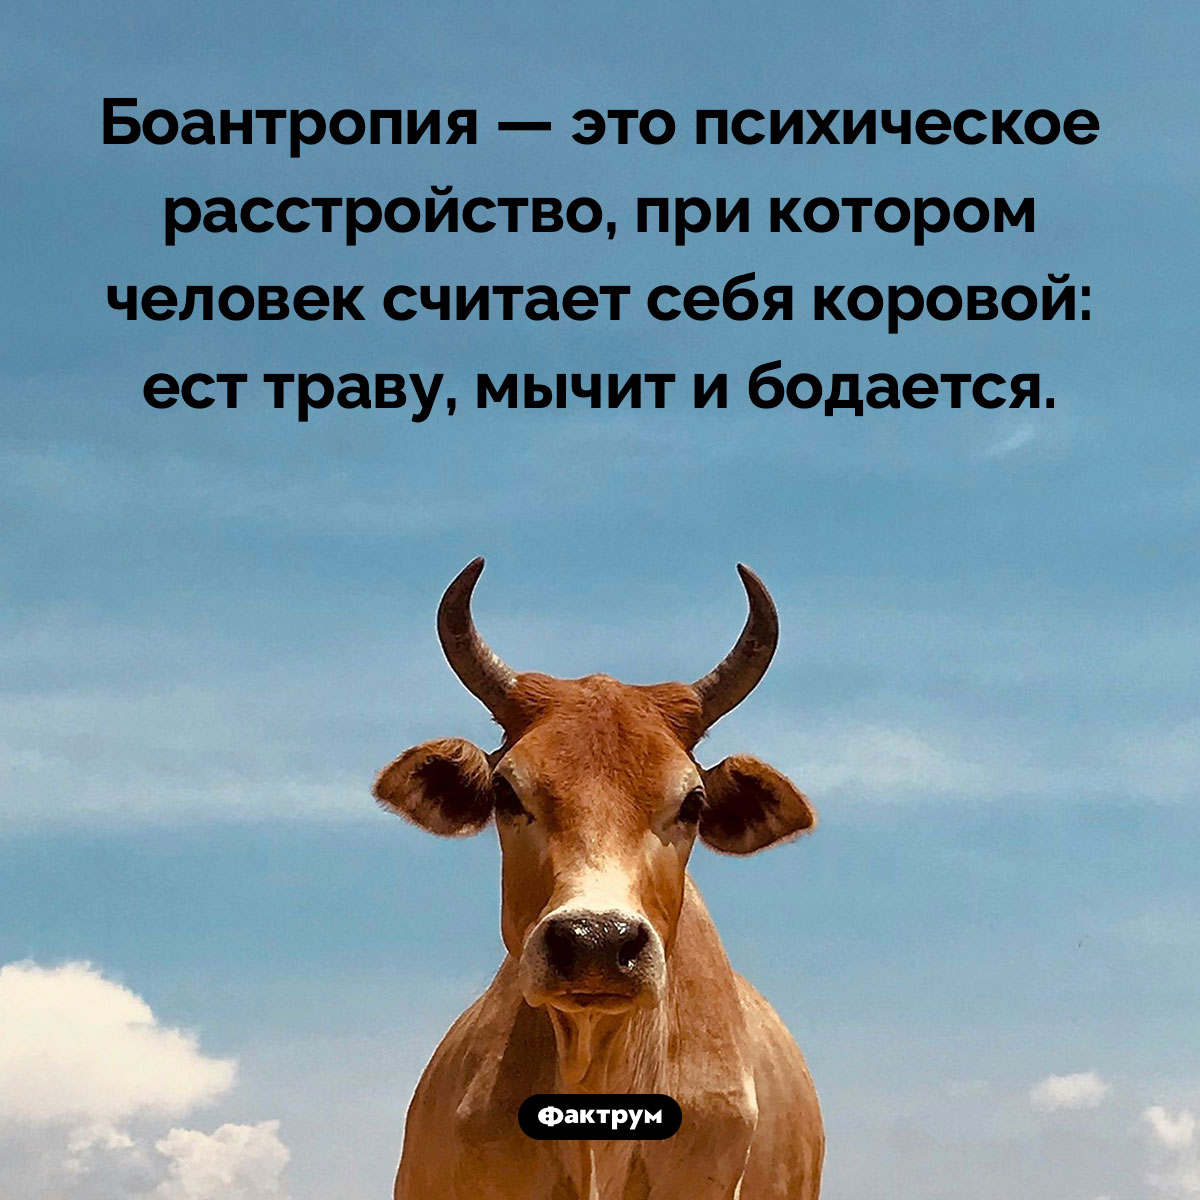 Что такое «боантропия». Боантропия — это психическое расстройство, при котором человек считает себя коровой: ест траву, мычит и бодается.